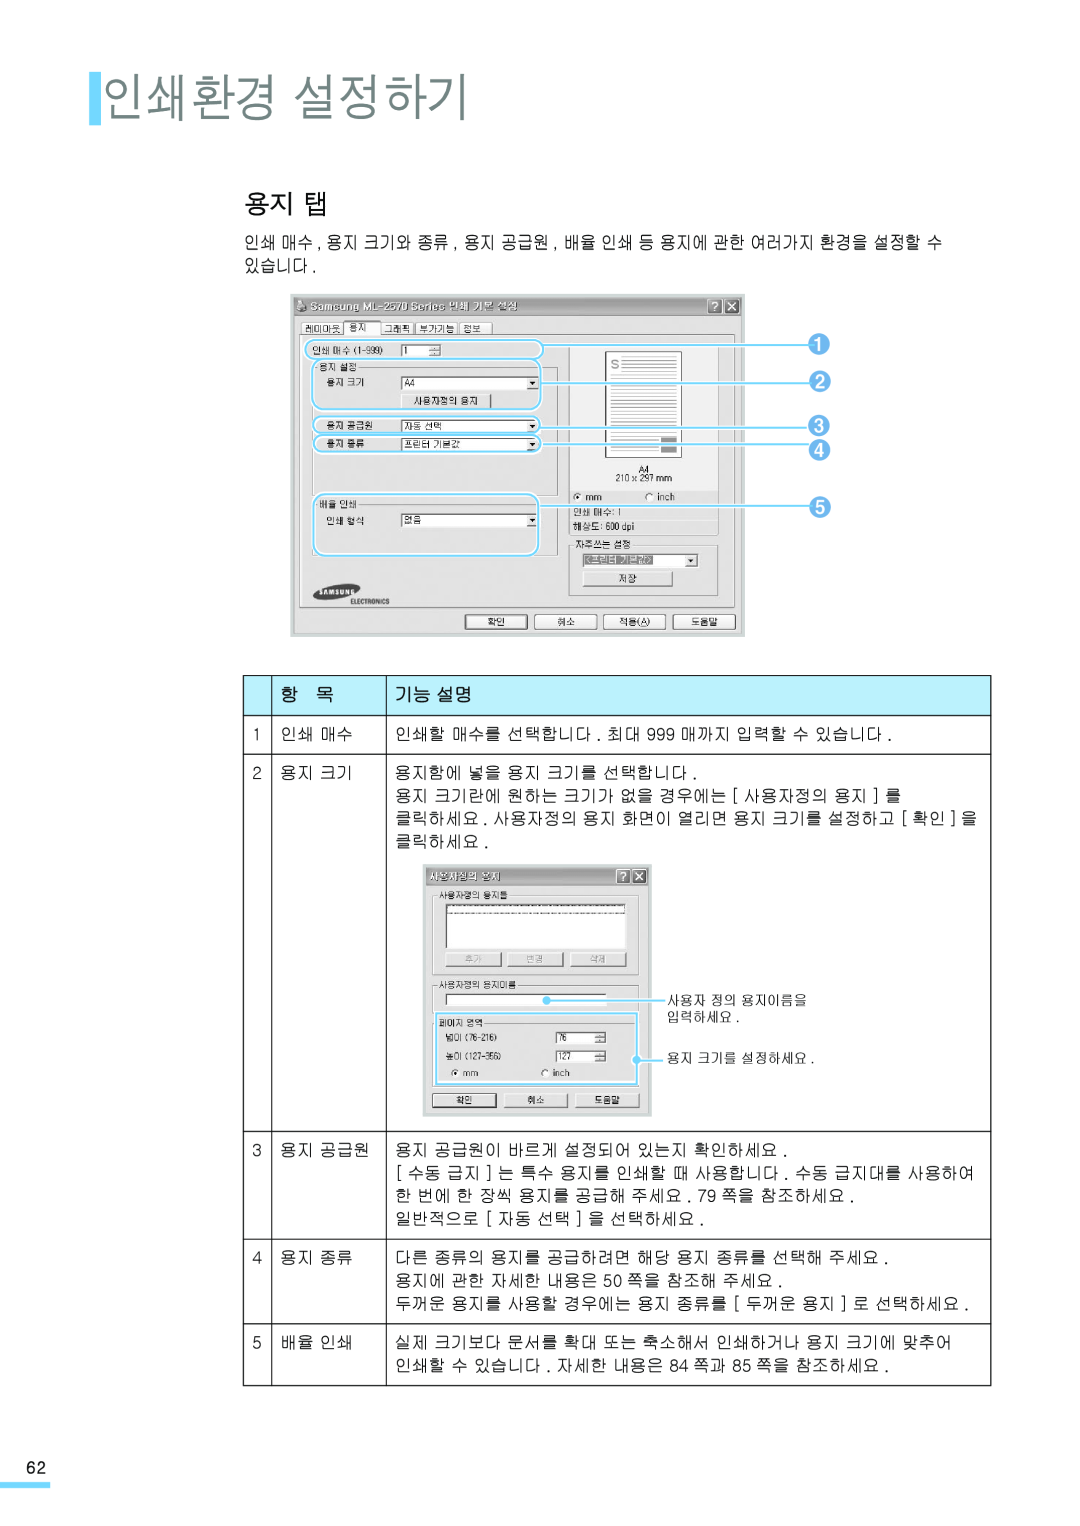 Samsung ML-2571N manual 인쇄환경 설정하기, 용지 탭, 인쇄 매수 , 용지 크기와 종류 , 용지 공급원 , 배율 인쇄 등 용지에 관한 여러가지 환경을 설정할 수 있습니다, 기능 설명 